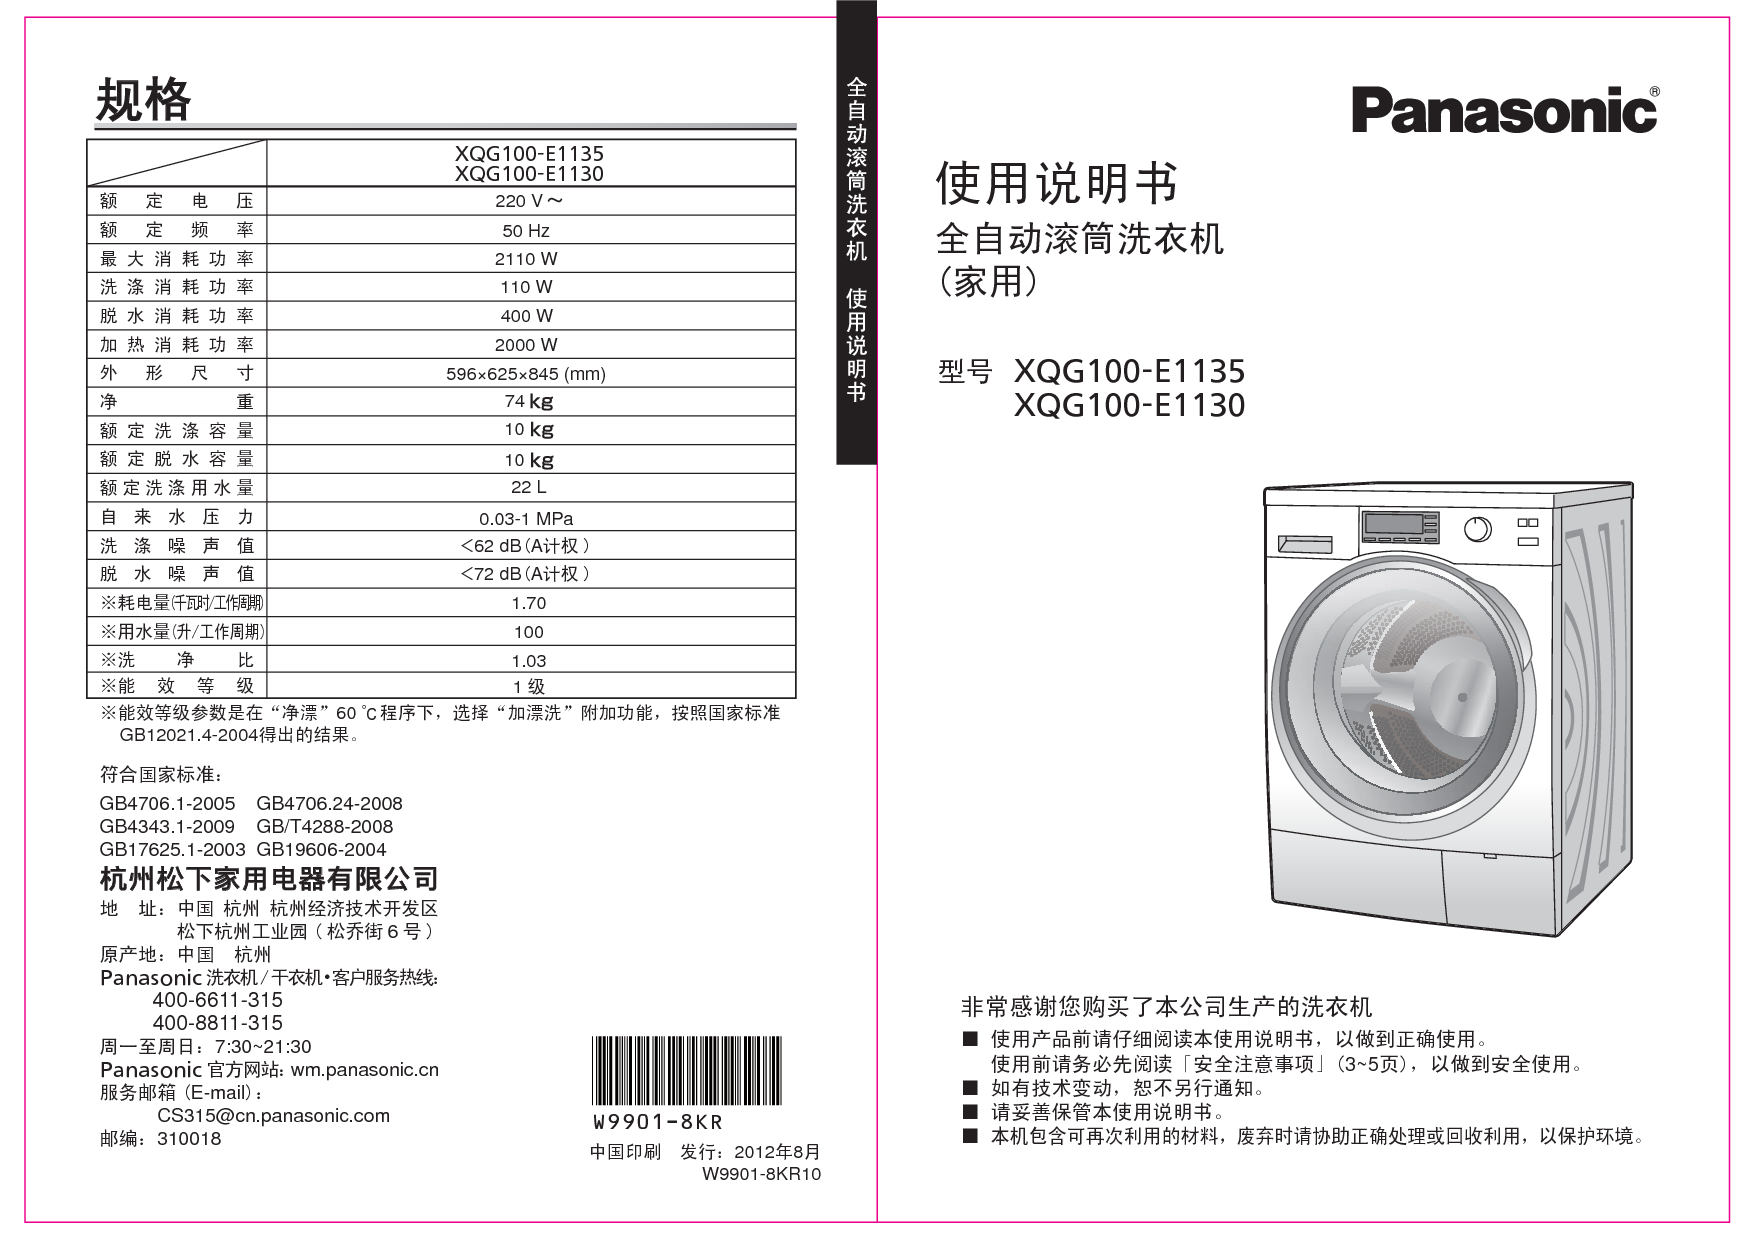 松下 Panasonic XQG100-E1130 说明书 封面